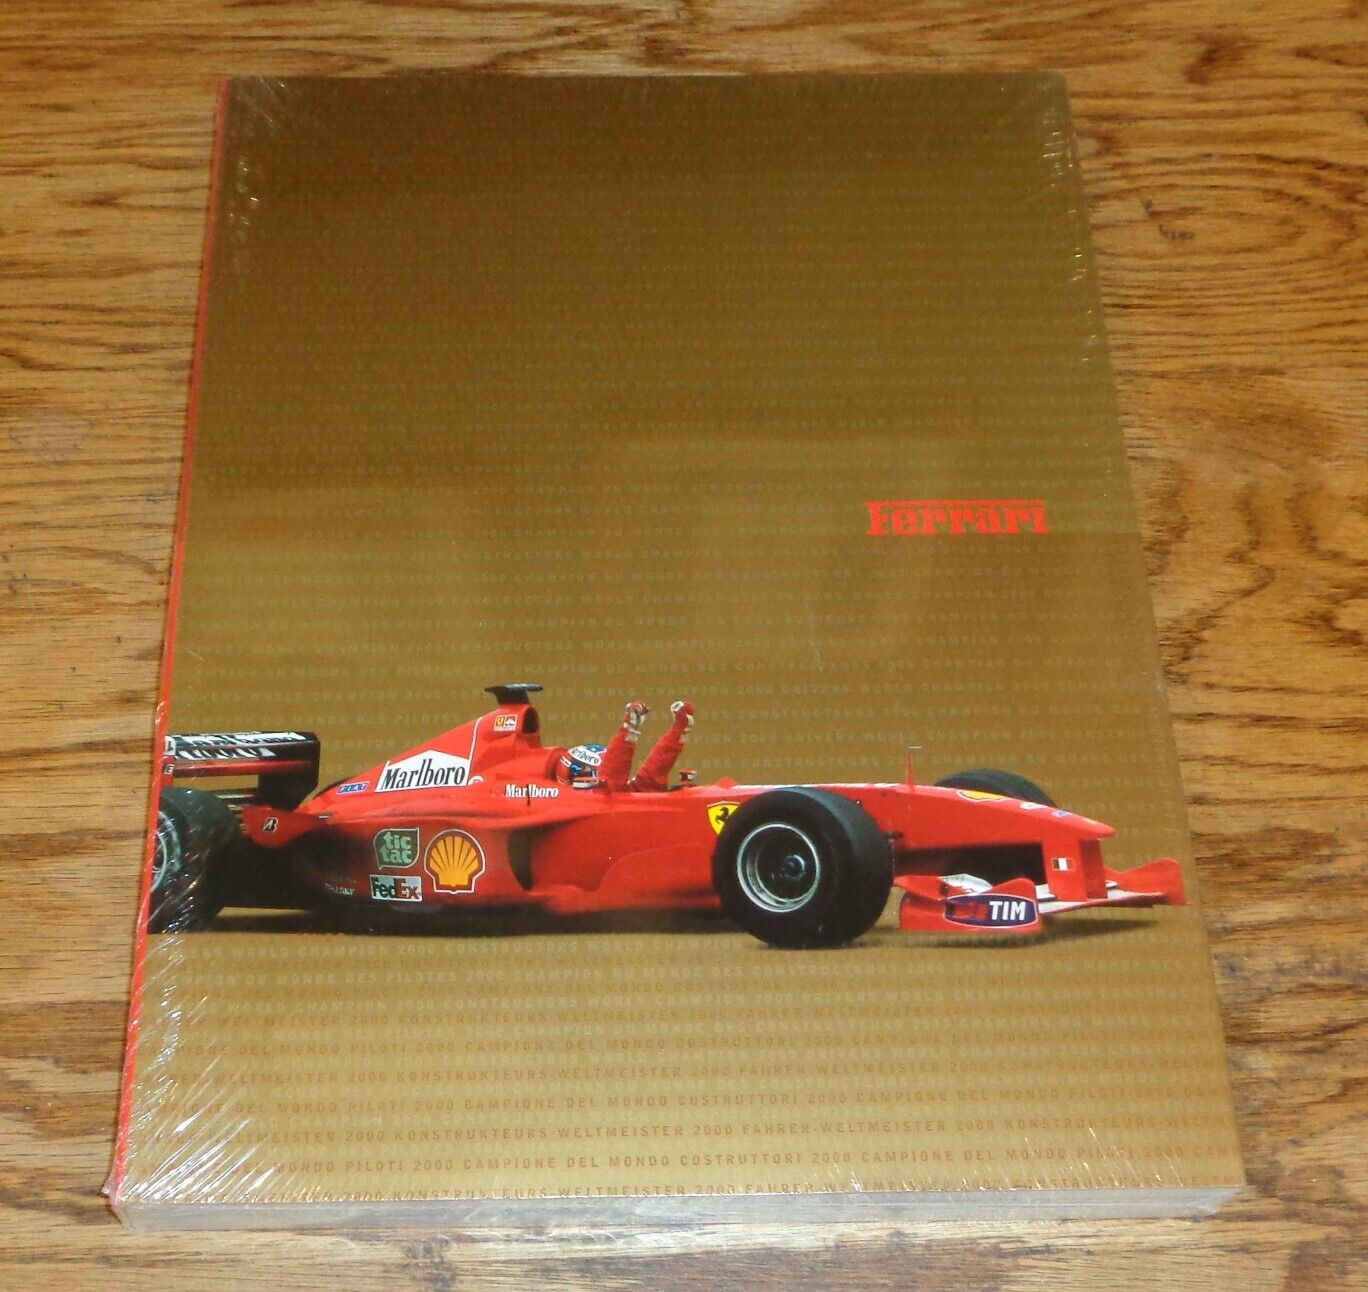 Original 2000 Ferrari Yearbook Campione Del Mondo 00